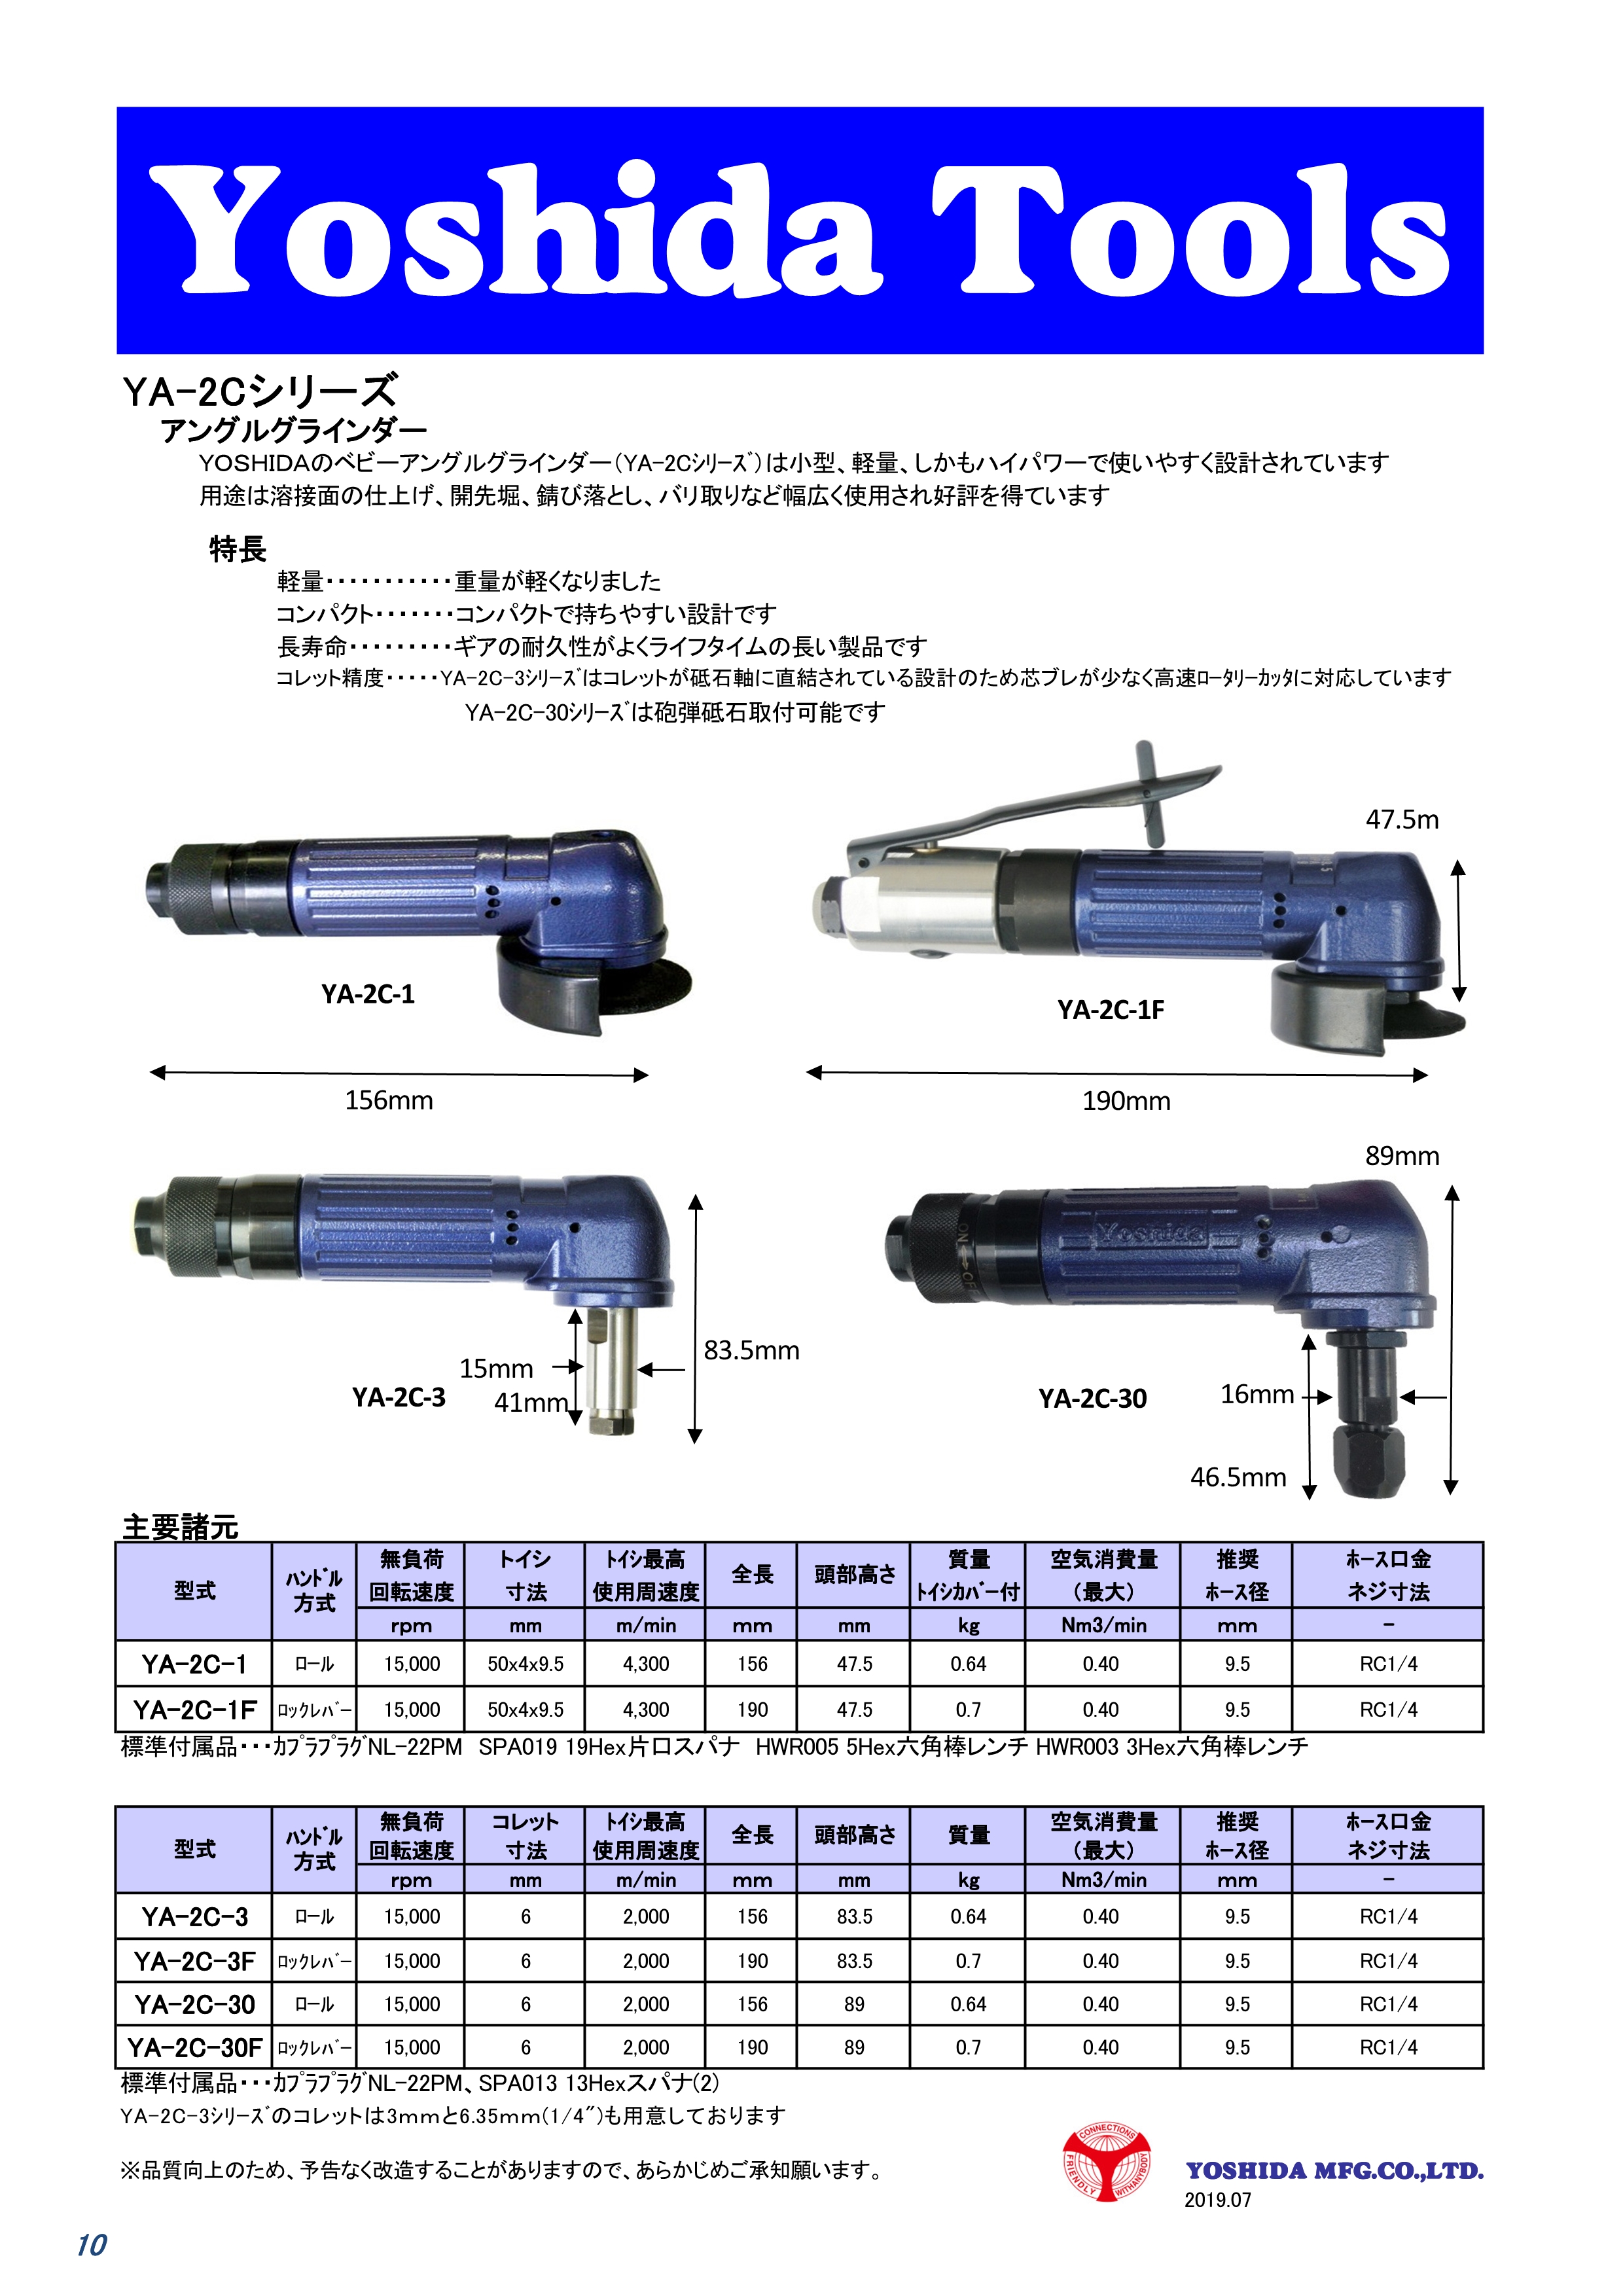 素晴らしい品質 Yoshida Tools エアーグラインダー YG-13S-1 blog